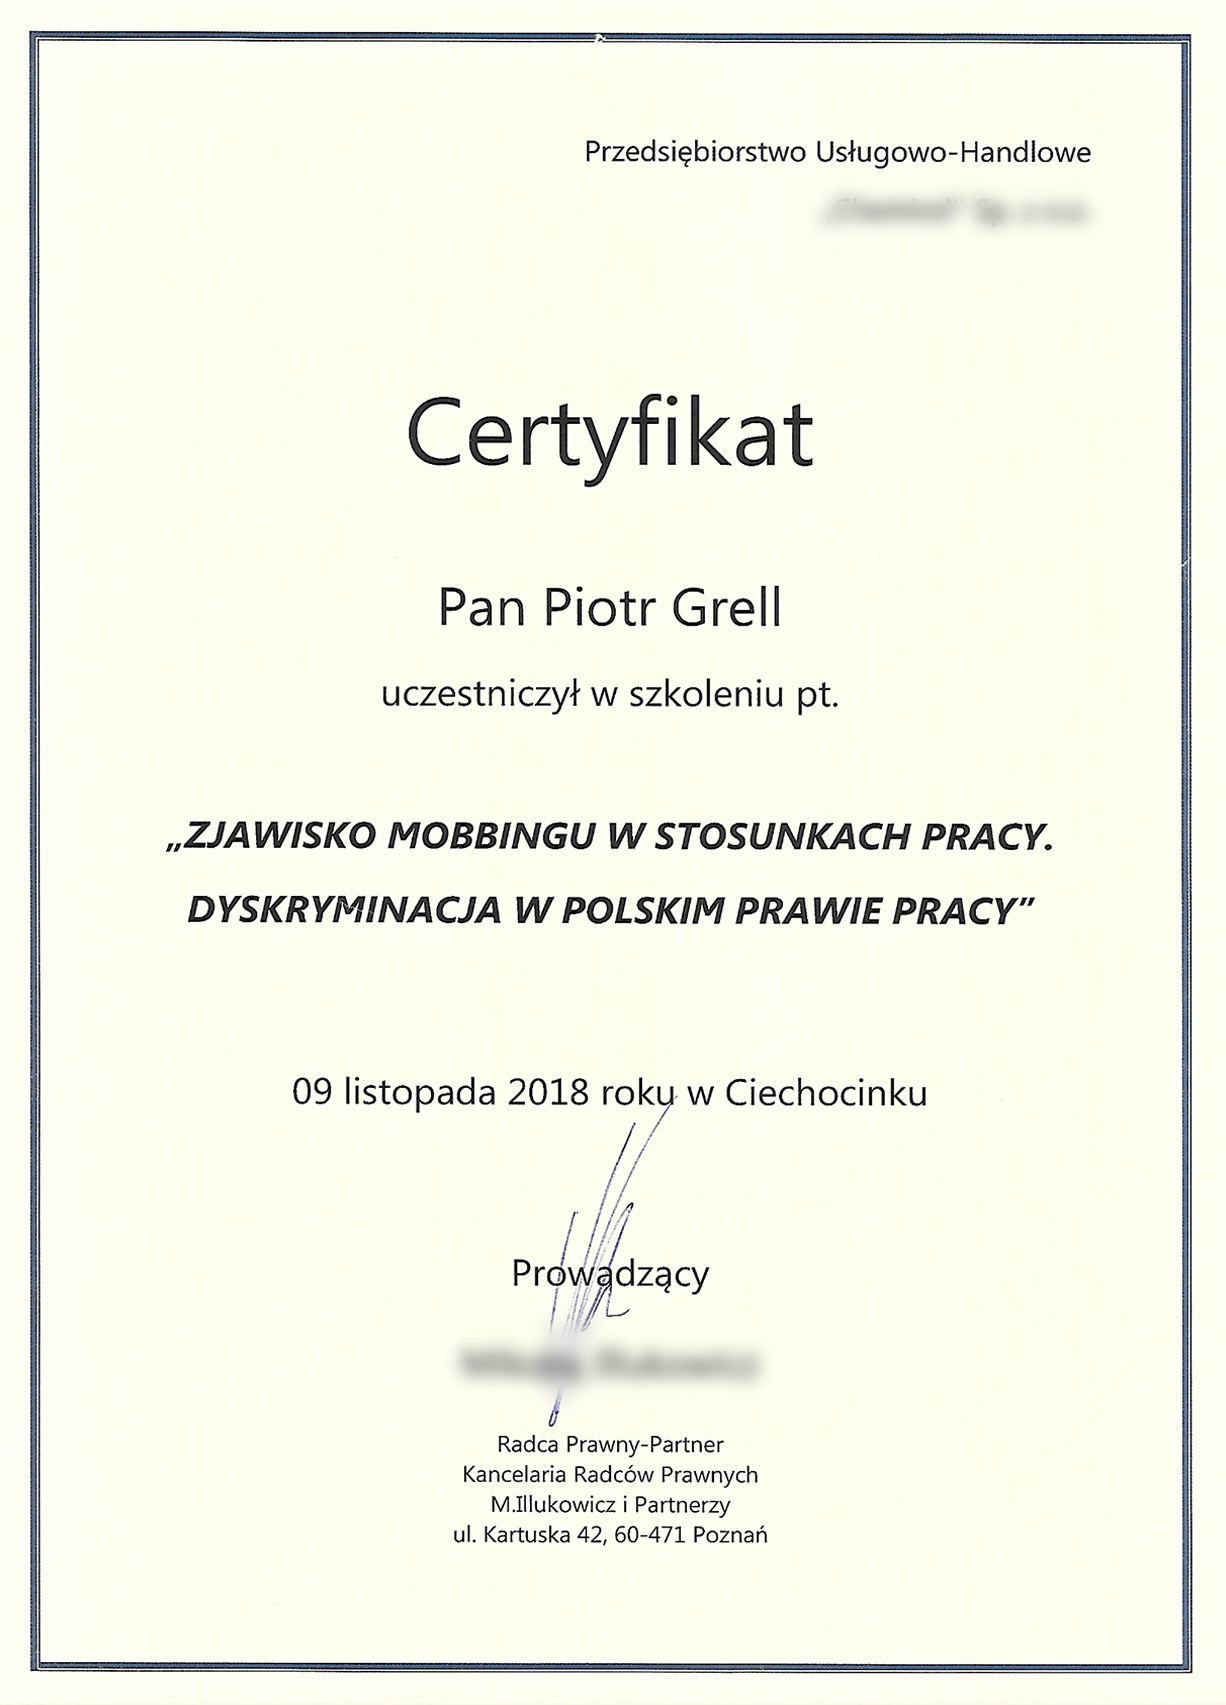 Certyfikat - Zjawisko mobbingu w stosunku pracy. Dyskryminacja w polskim prawie pracy.